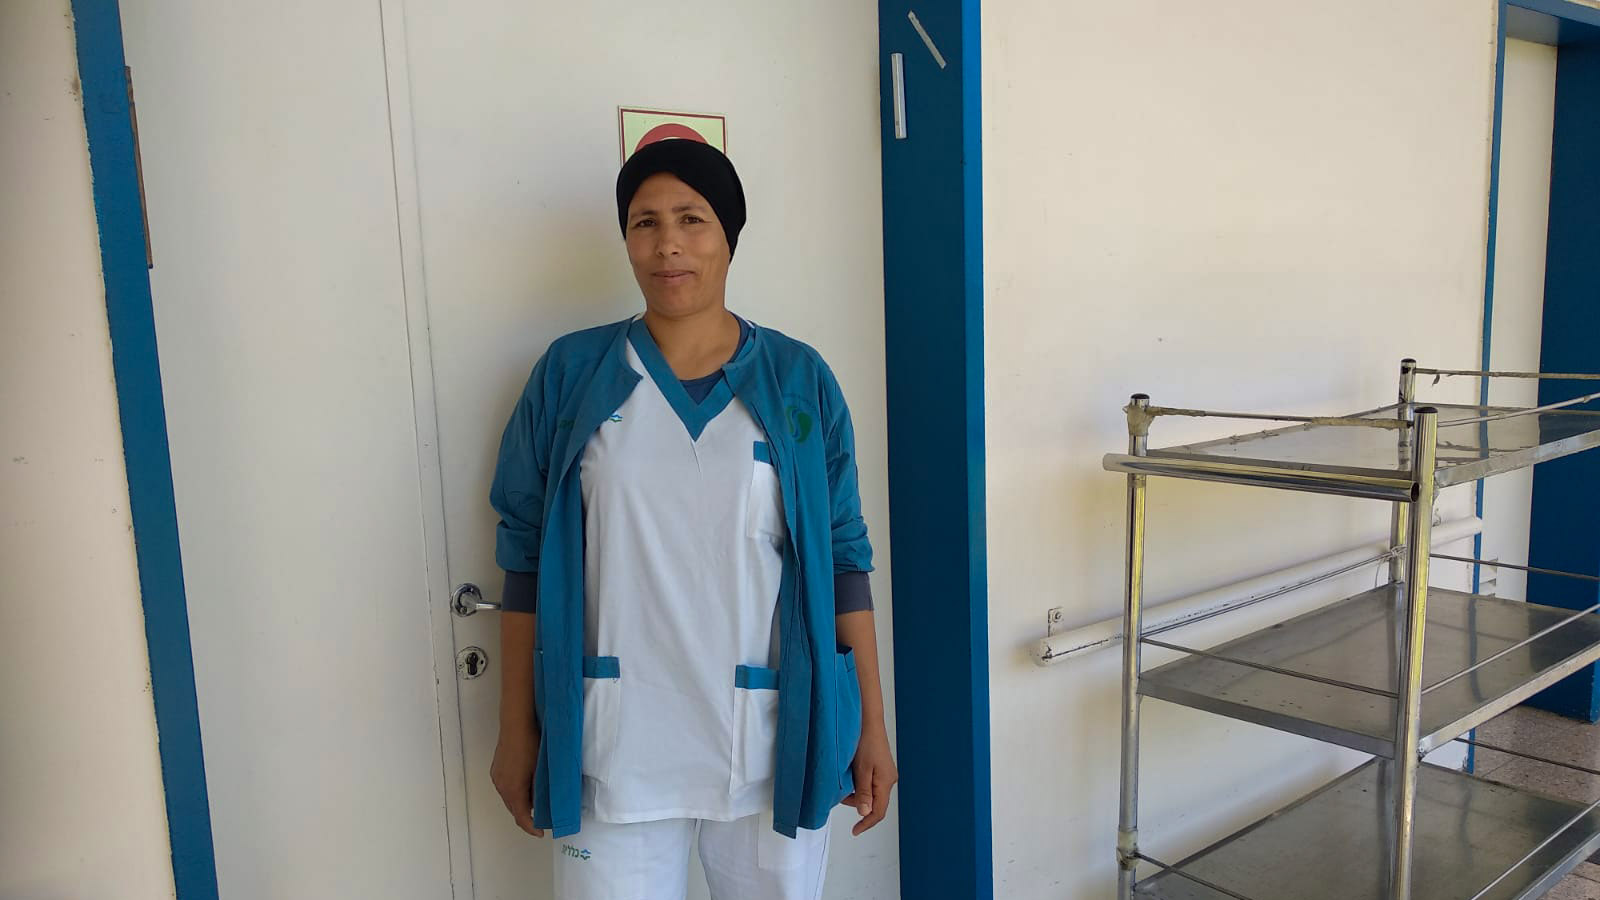 יסמינה עובדת ניקיון בבית חולים סורוקה (צילום: יעל אלנתן)